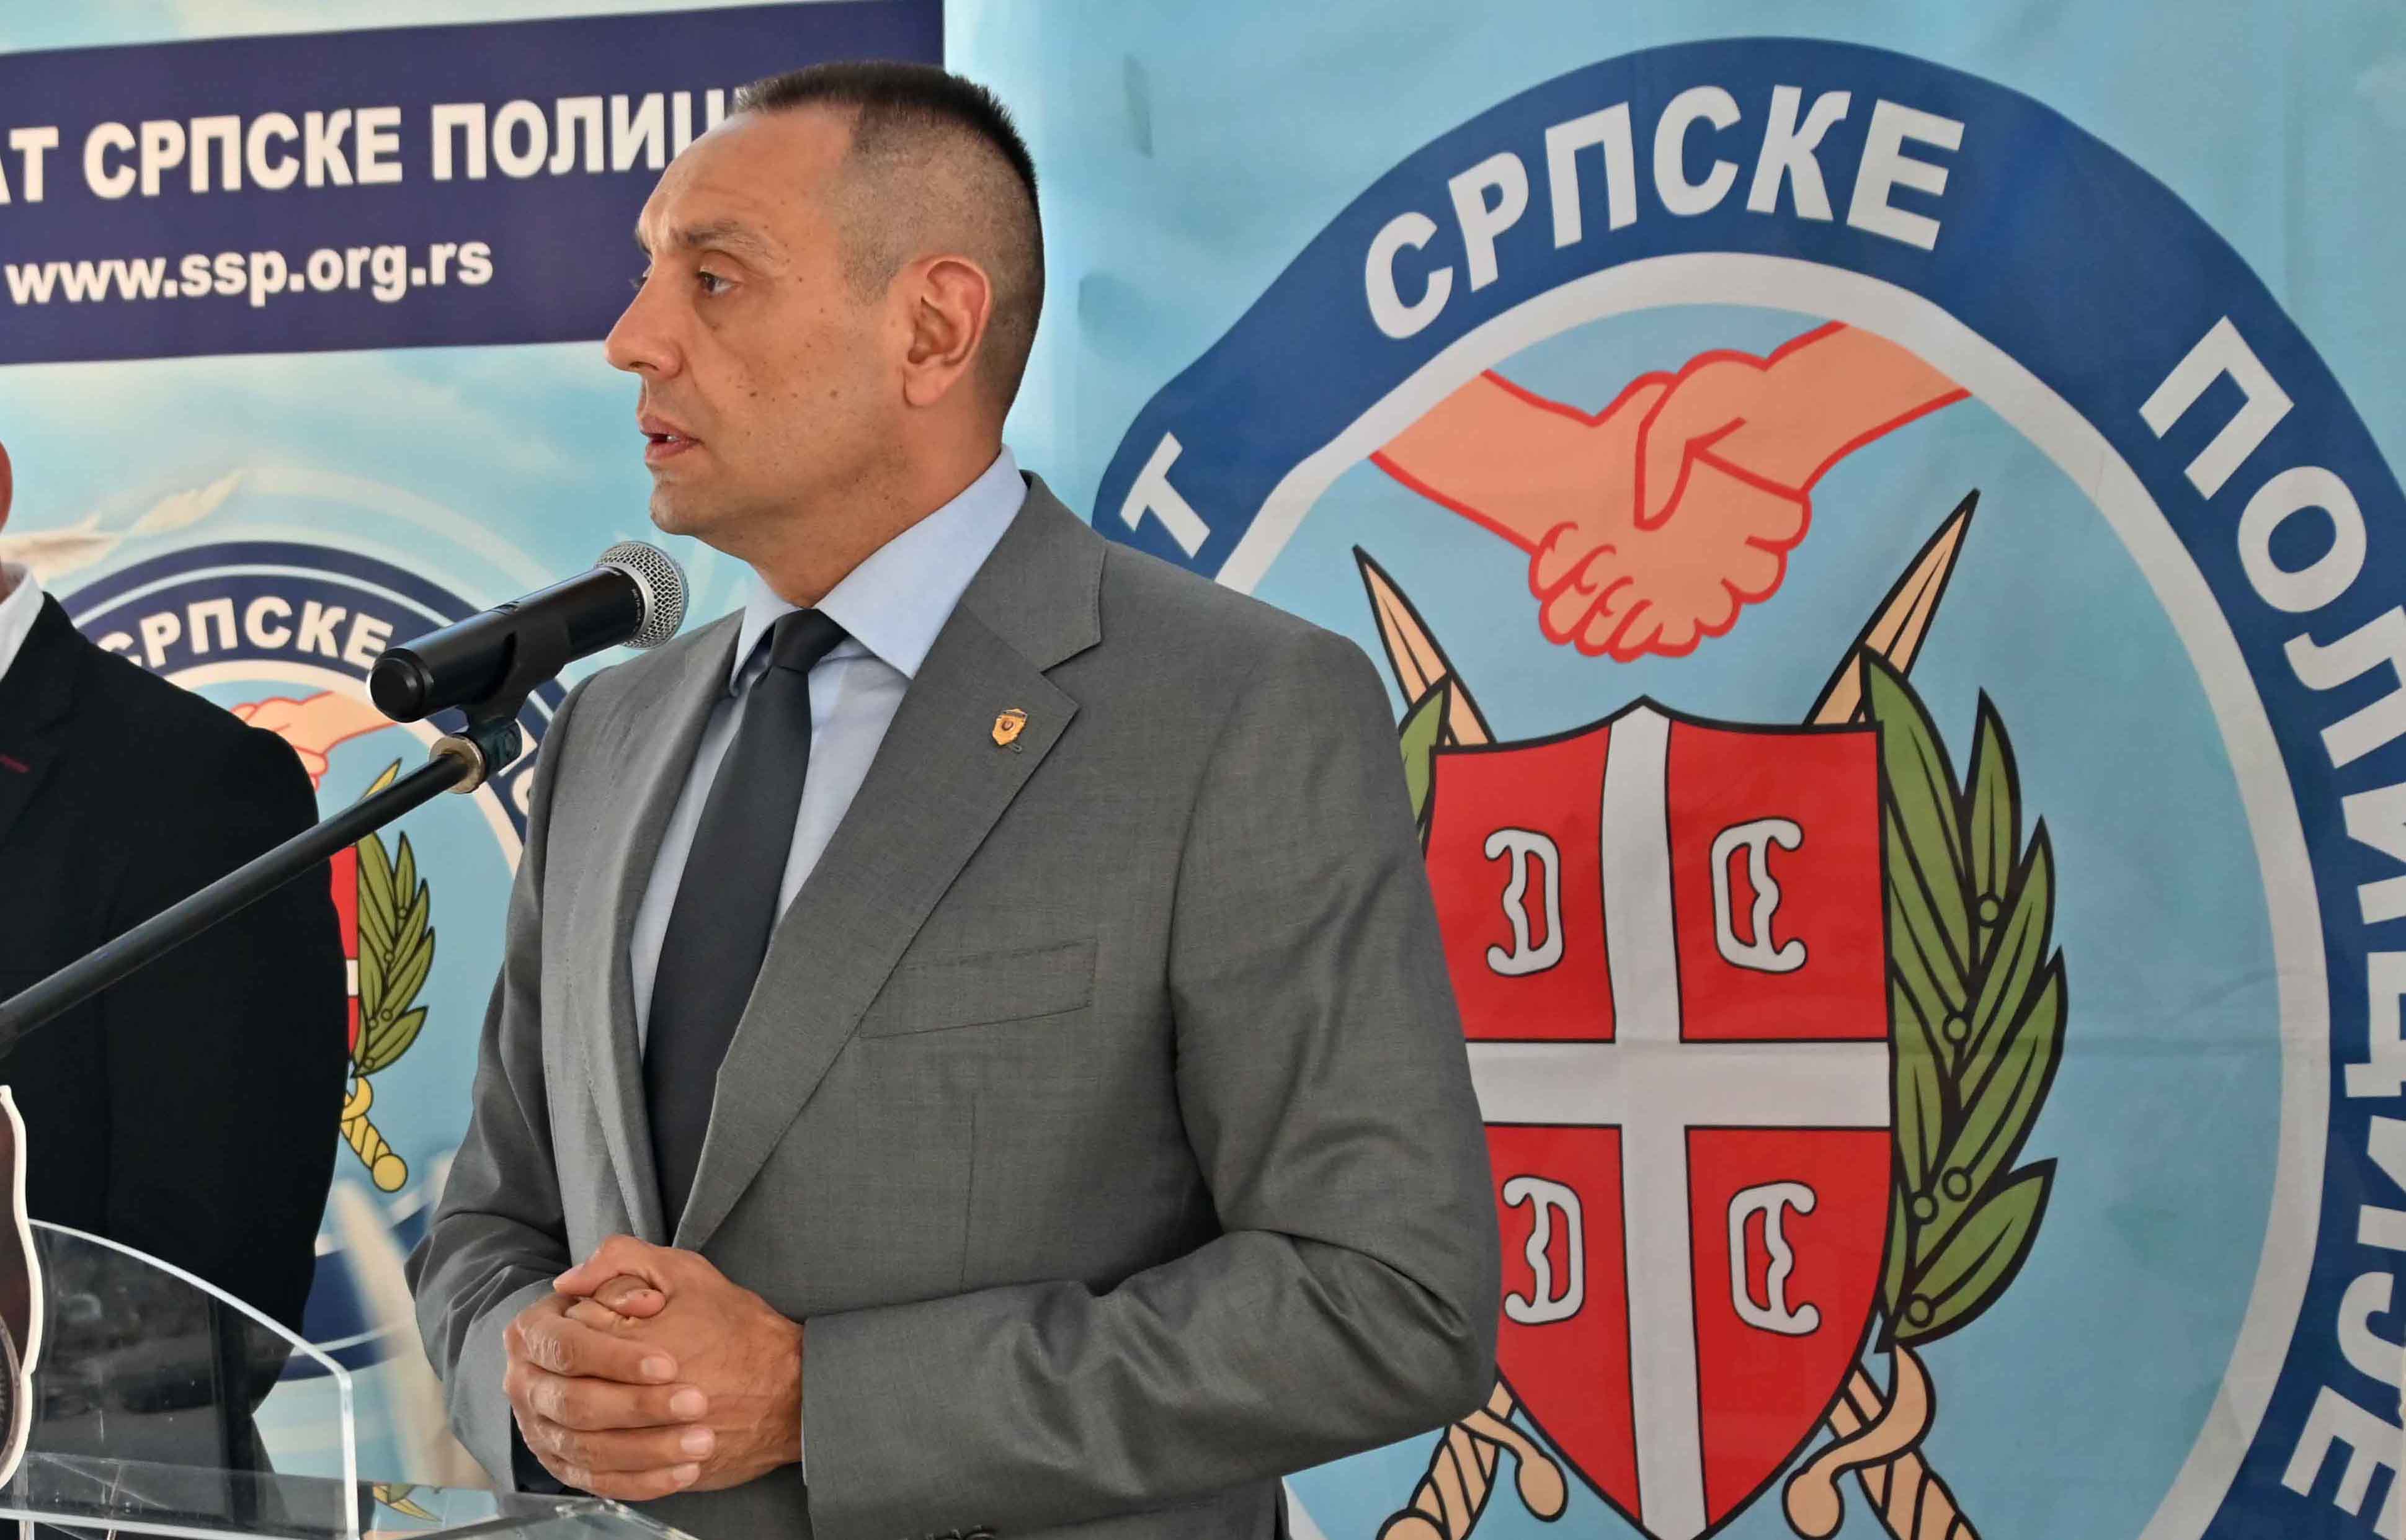 Свечано обележено 15 година постојања и рада Синдиката српске полиције